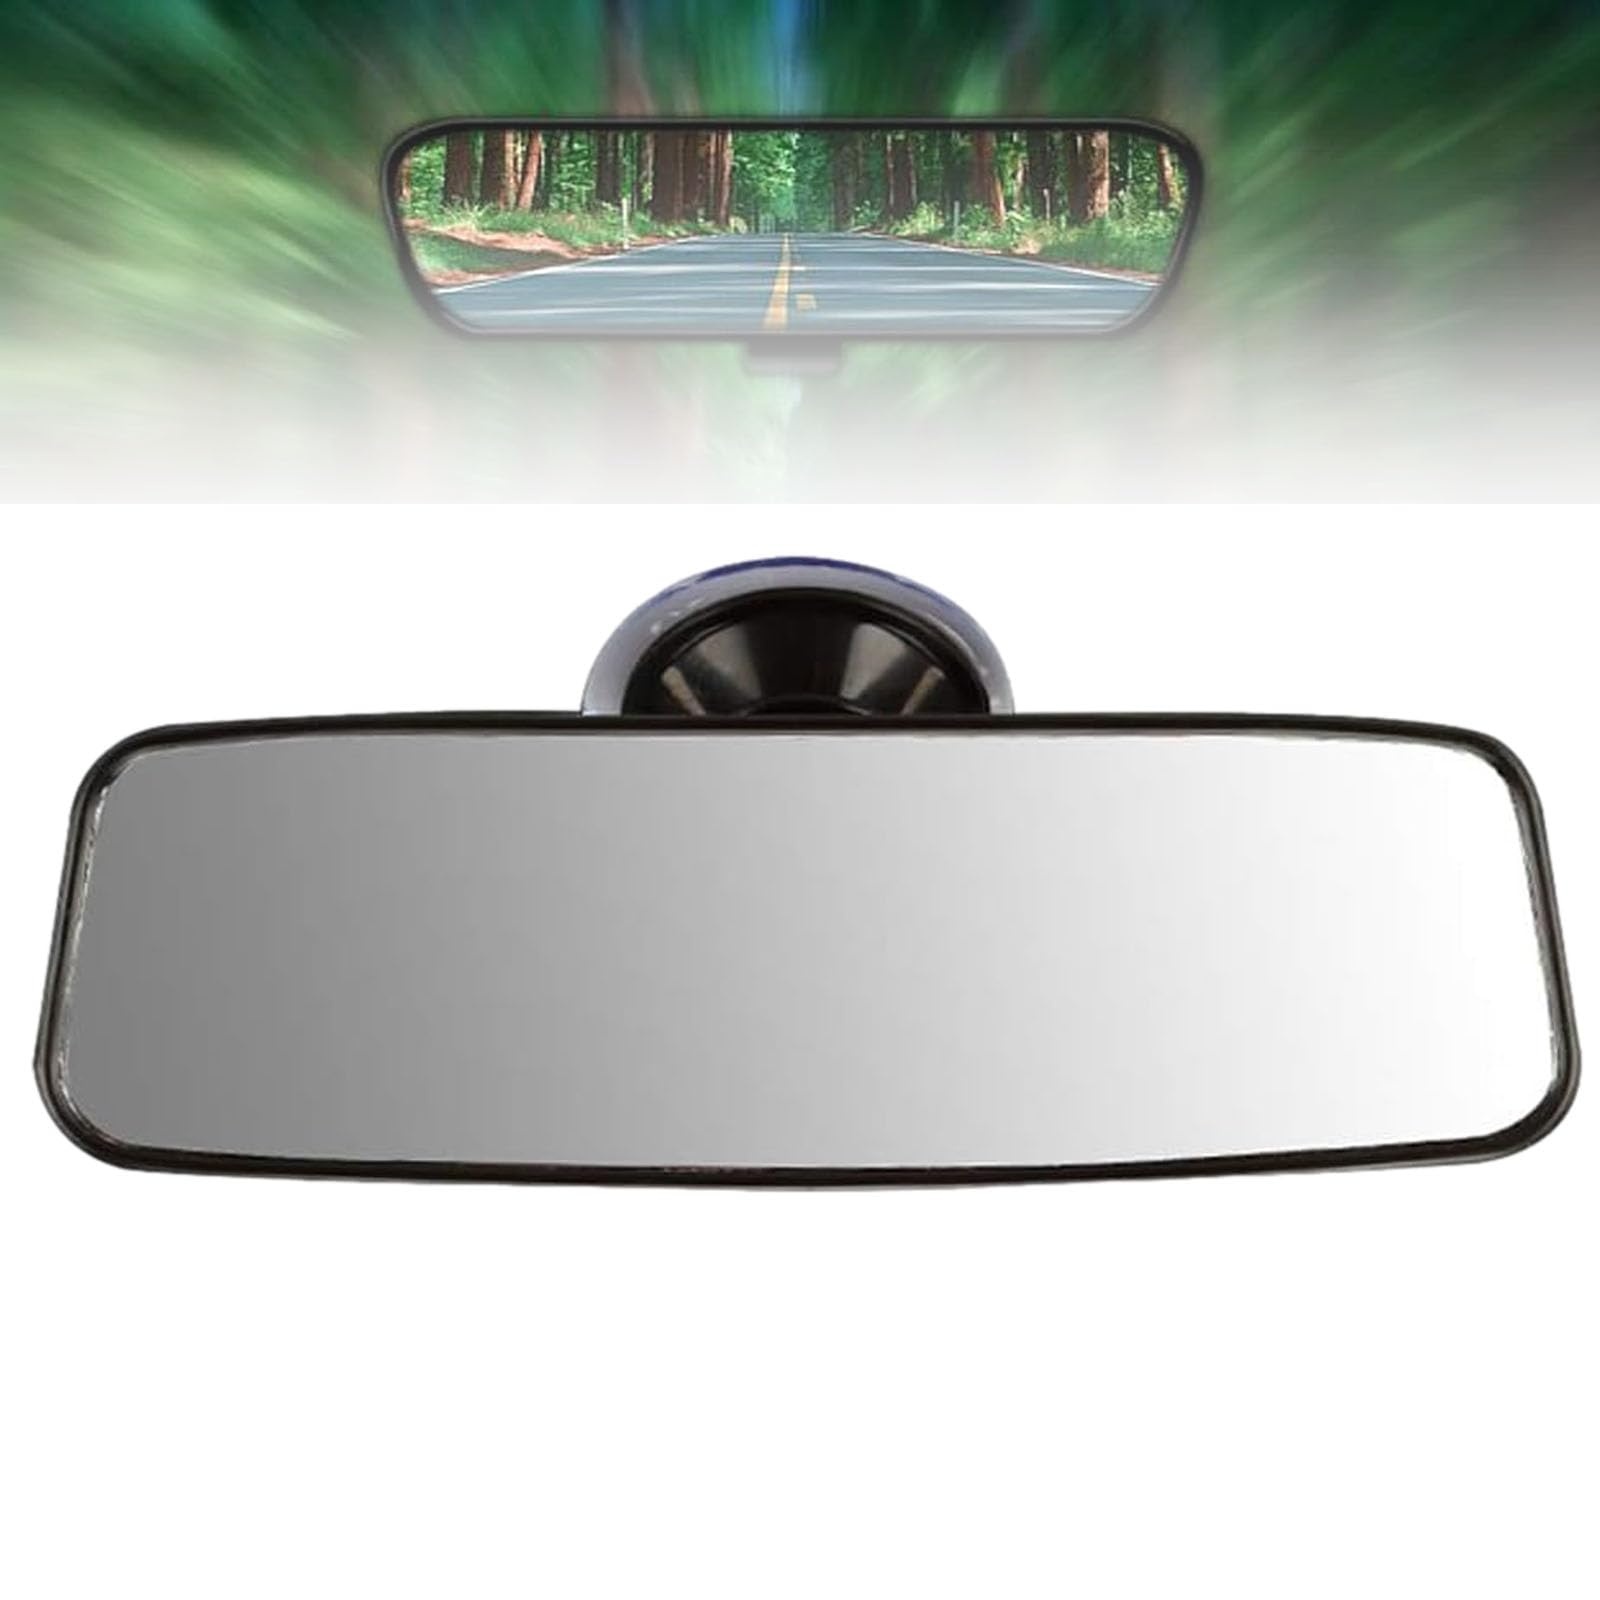 Car Interior Rear View Mirror, Universal Auto Spiegel für Auto, Blendschutz Auto Innenspiegel, Innenspiegel Auto mit Weiß Flacher Glas Large Vision, Interior Rear View Mirror, Car Interior Mirror